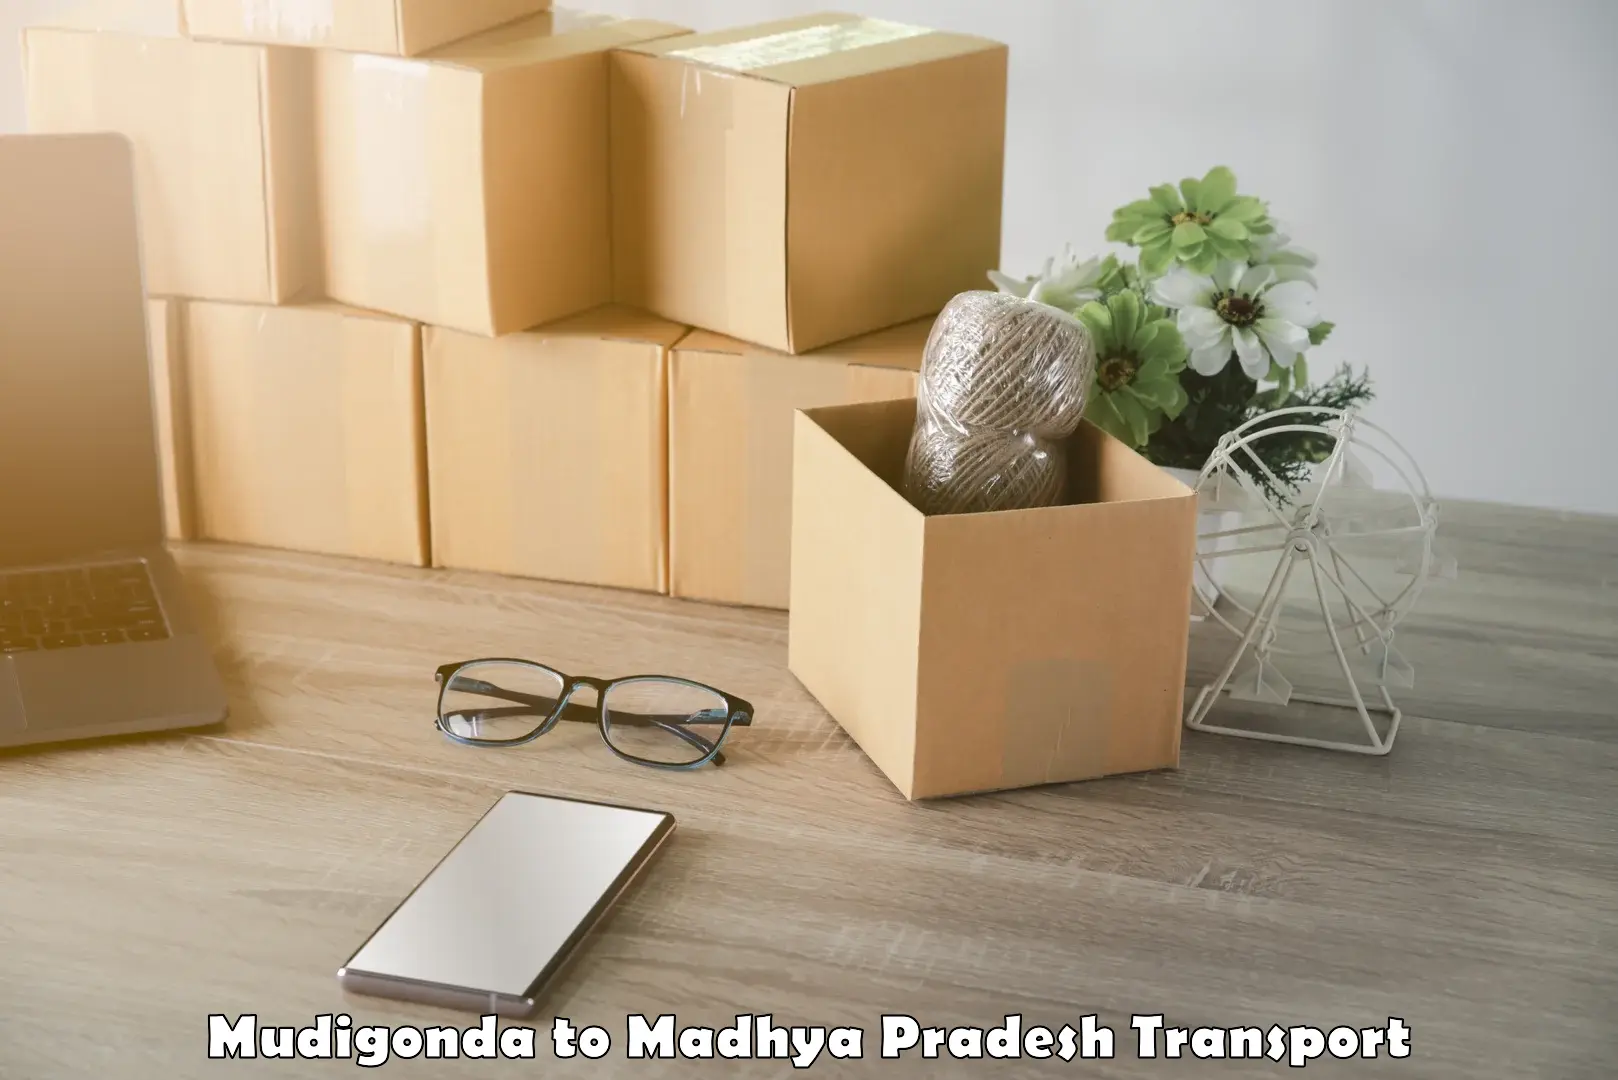 Transport in sharing Mudigonda to Sardarpur